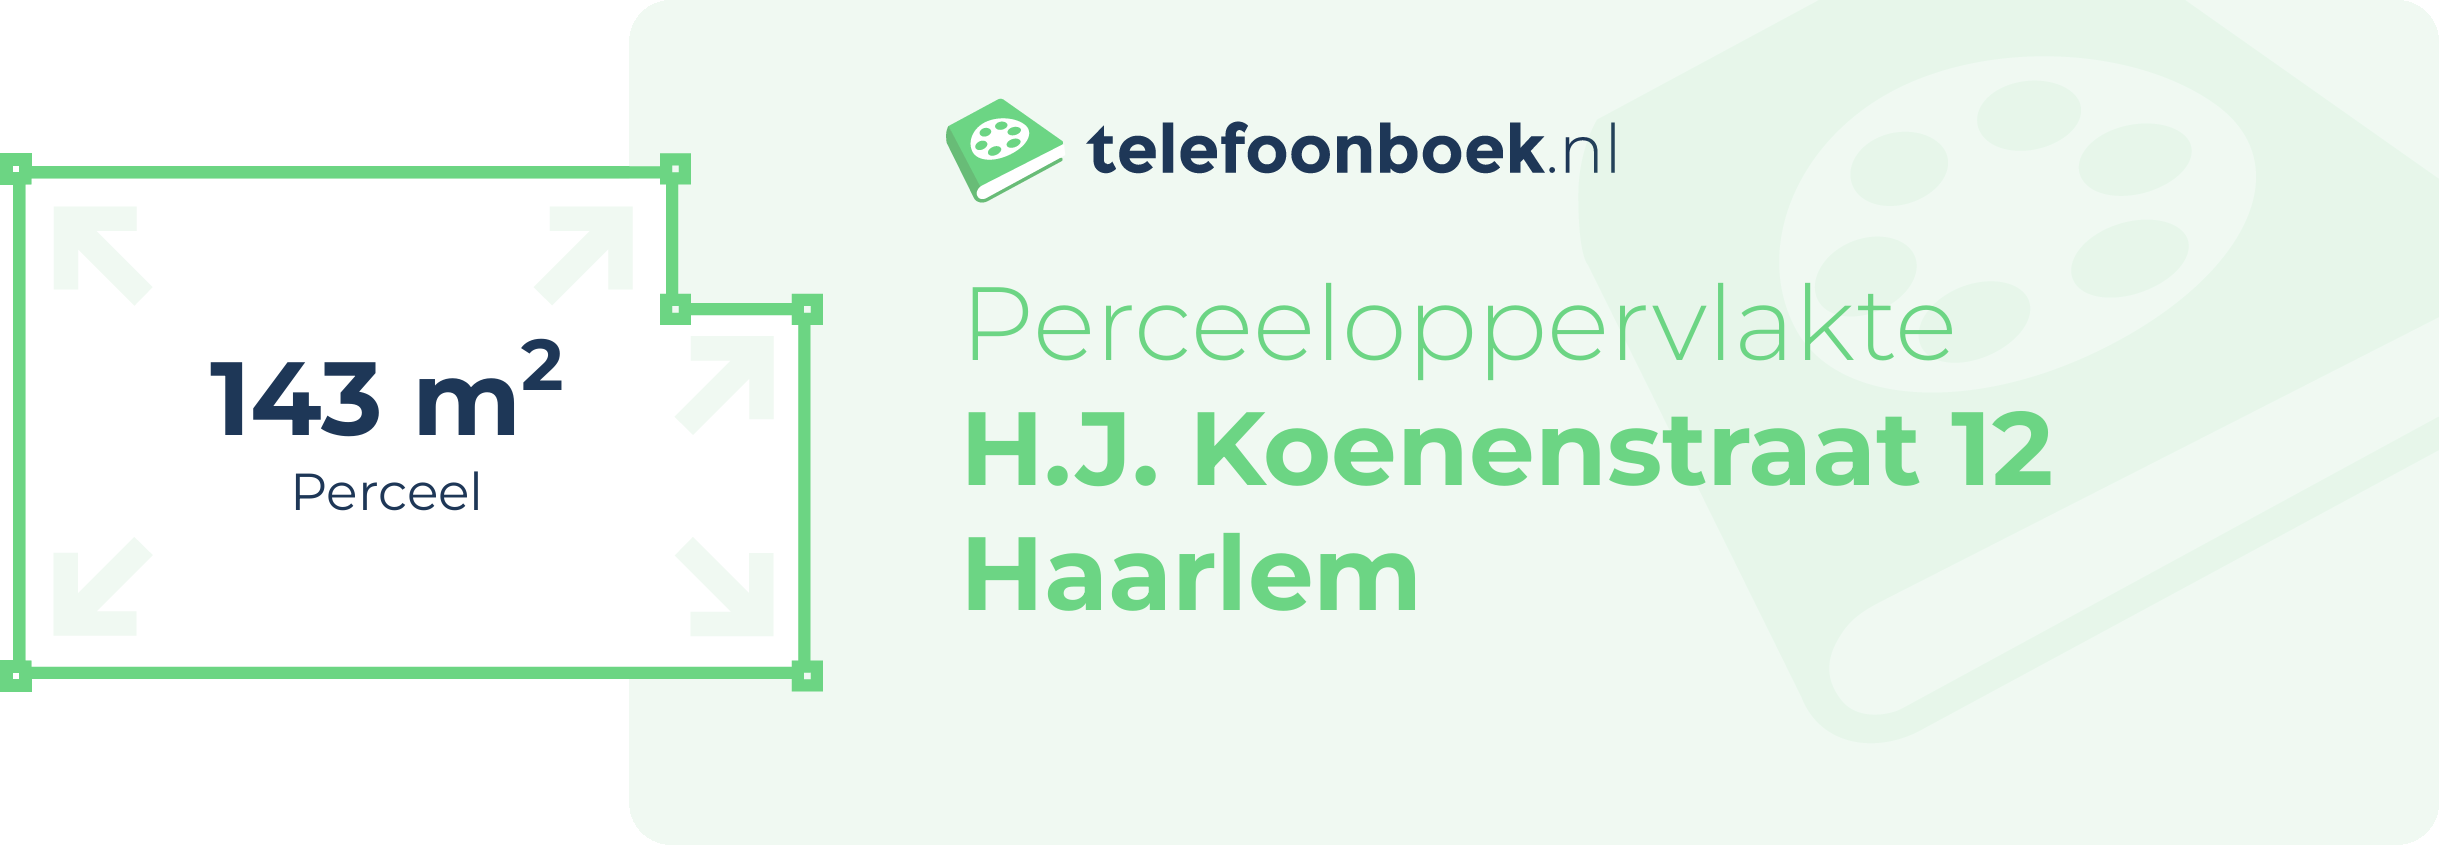 Perceeloppervlakte H.J. Koenenstraat 12 Haarlem